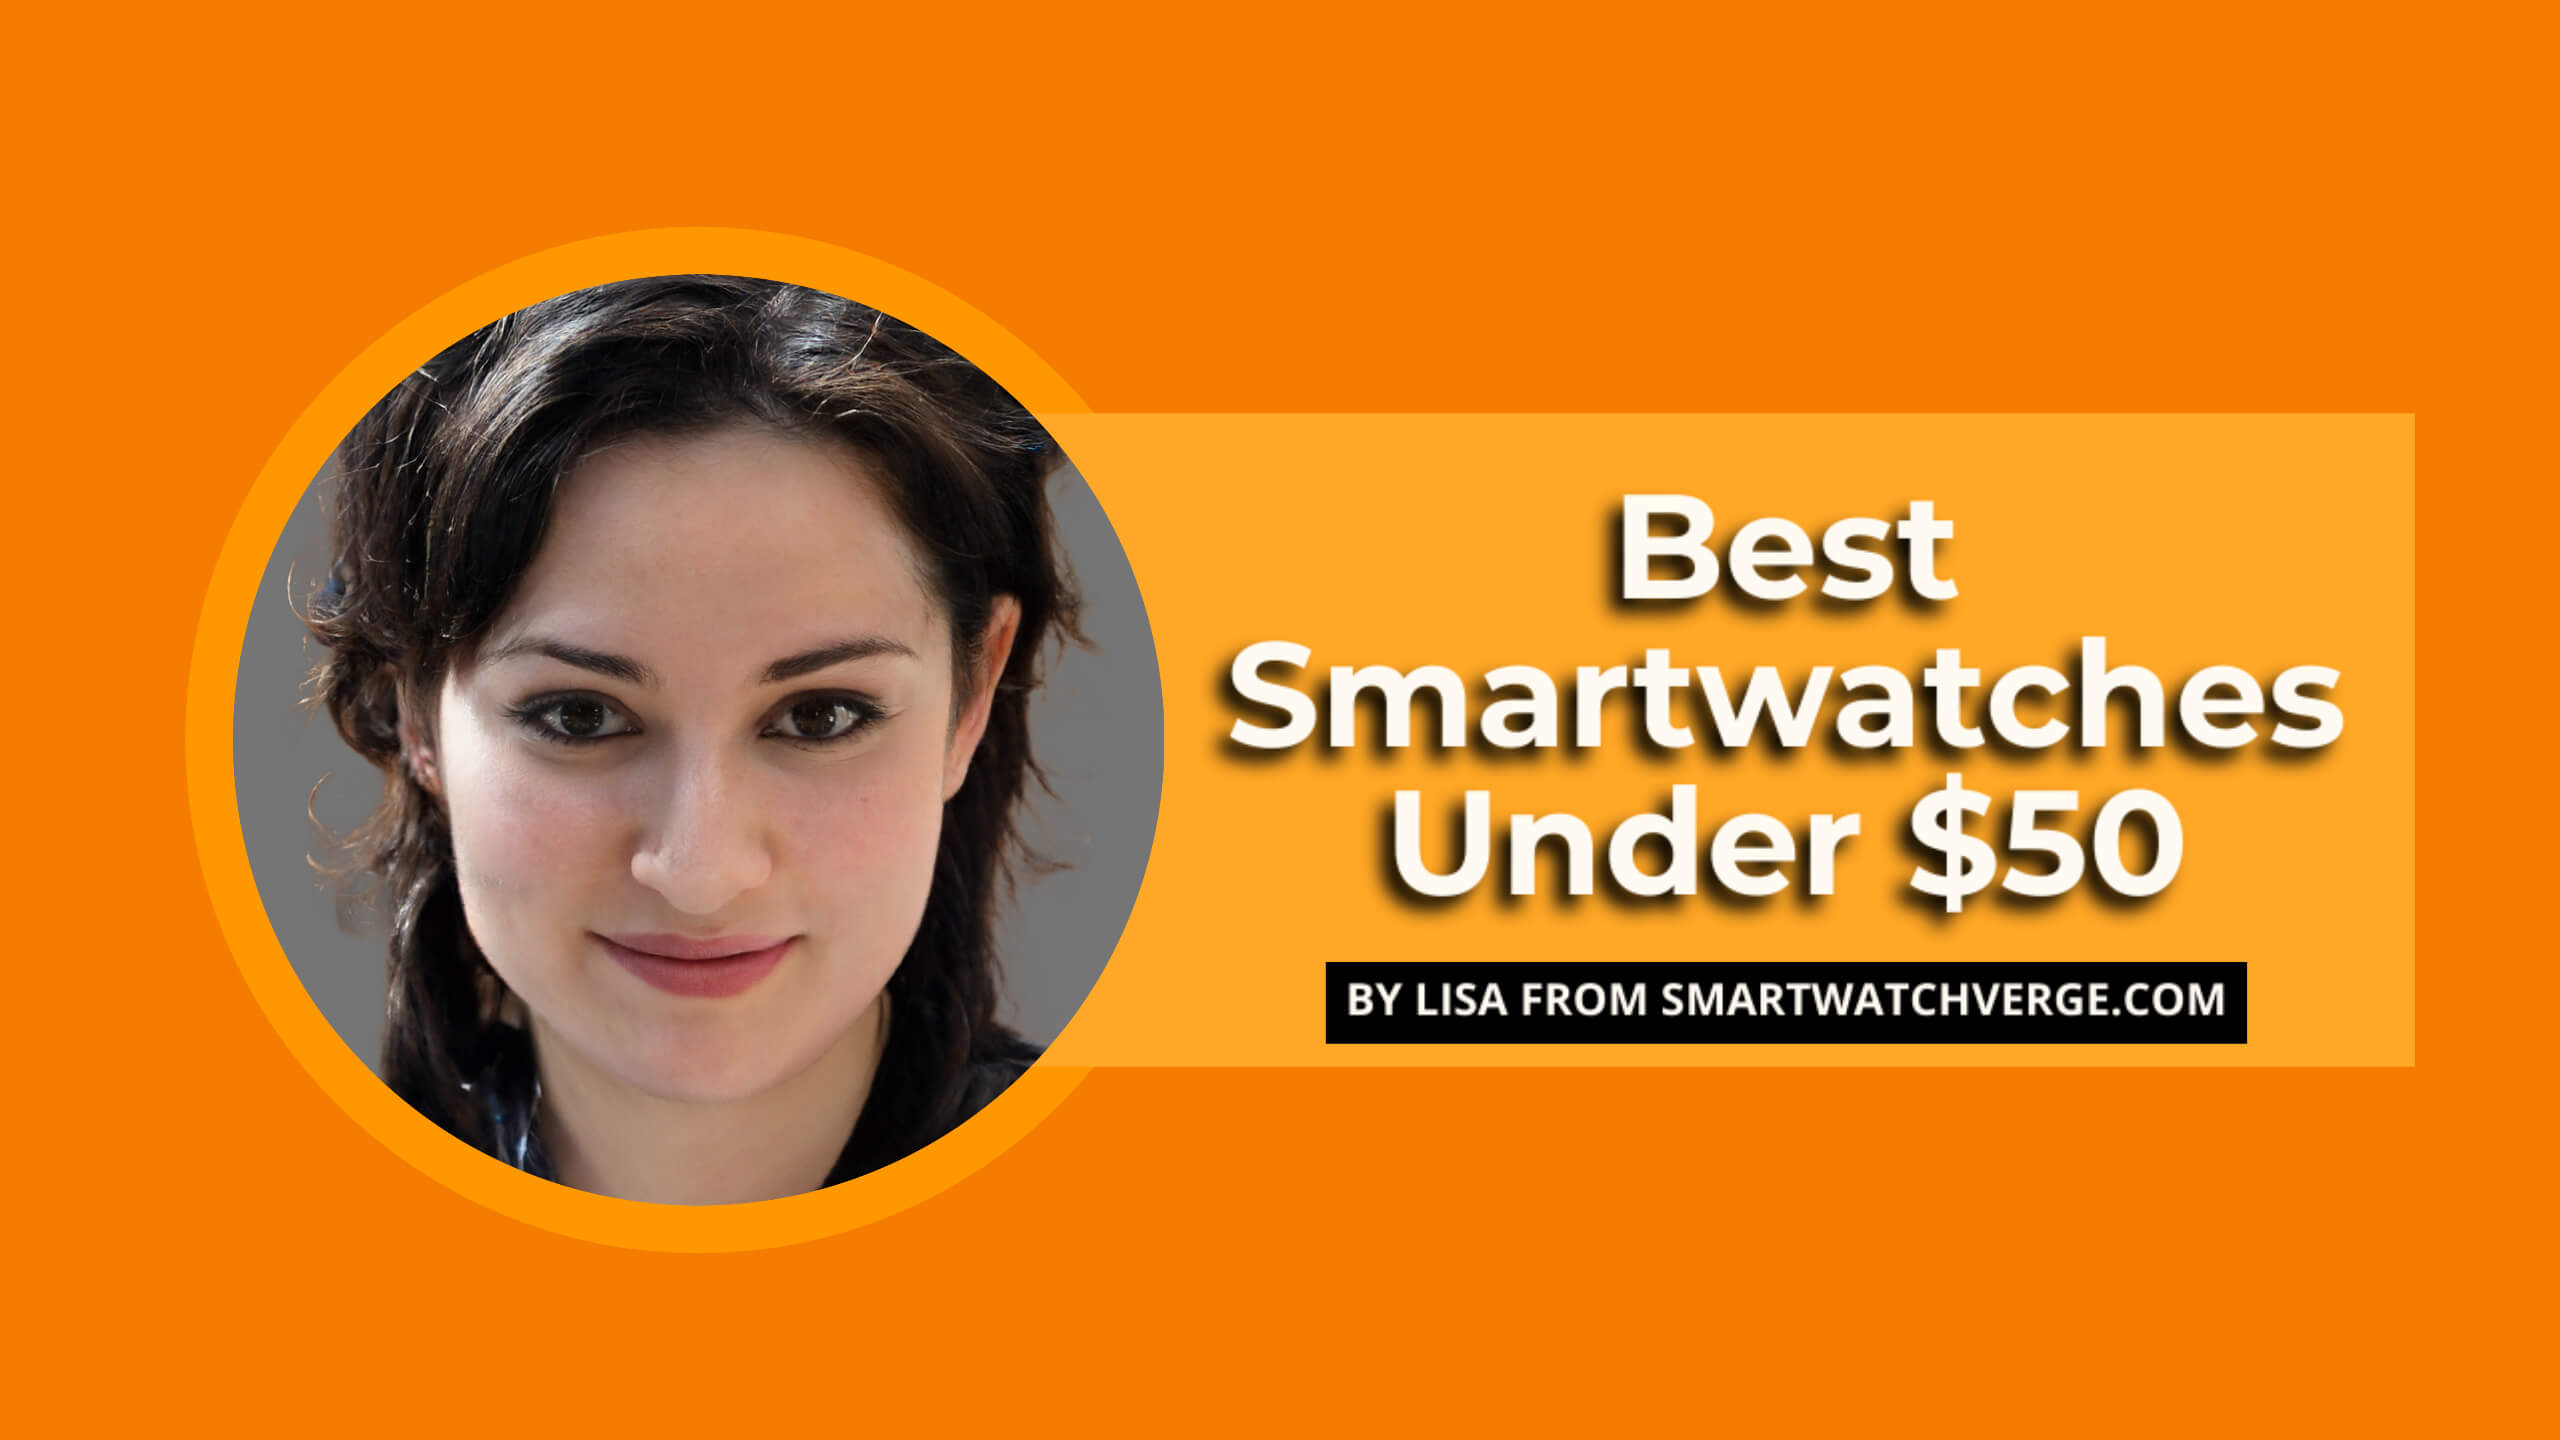 Best Smartwatches Under $50